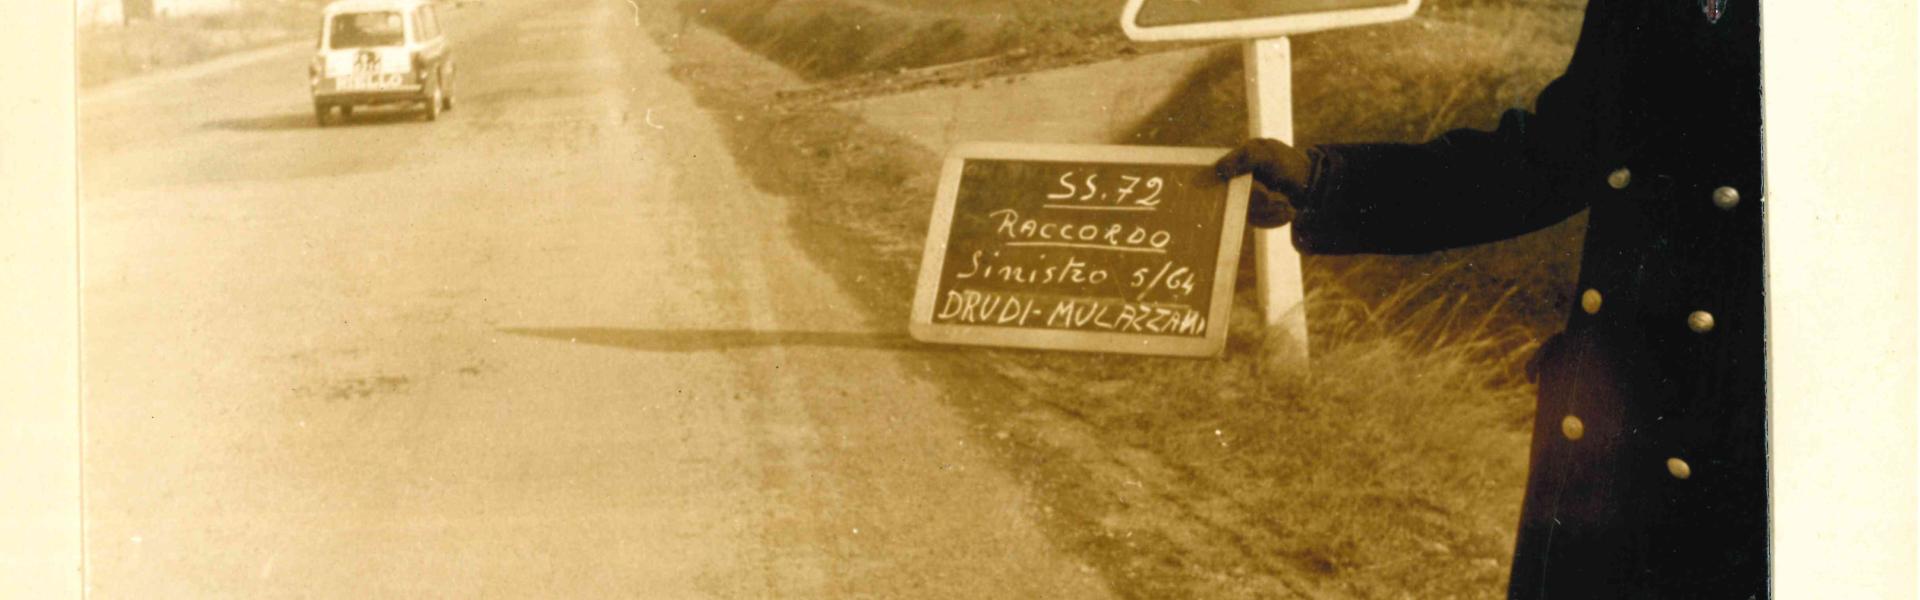 Riproduzione di una pagina dei un rapporto fotografico del 1964, con in primo piano un Vigile con in mano una lavagna indicante SS 72 raccordo, sullo sfondo un auto e i palazzi che ora sono in via Dalla Chiesa